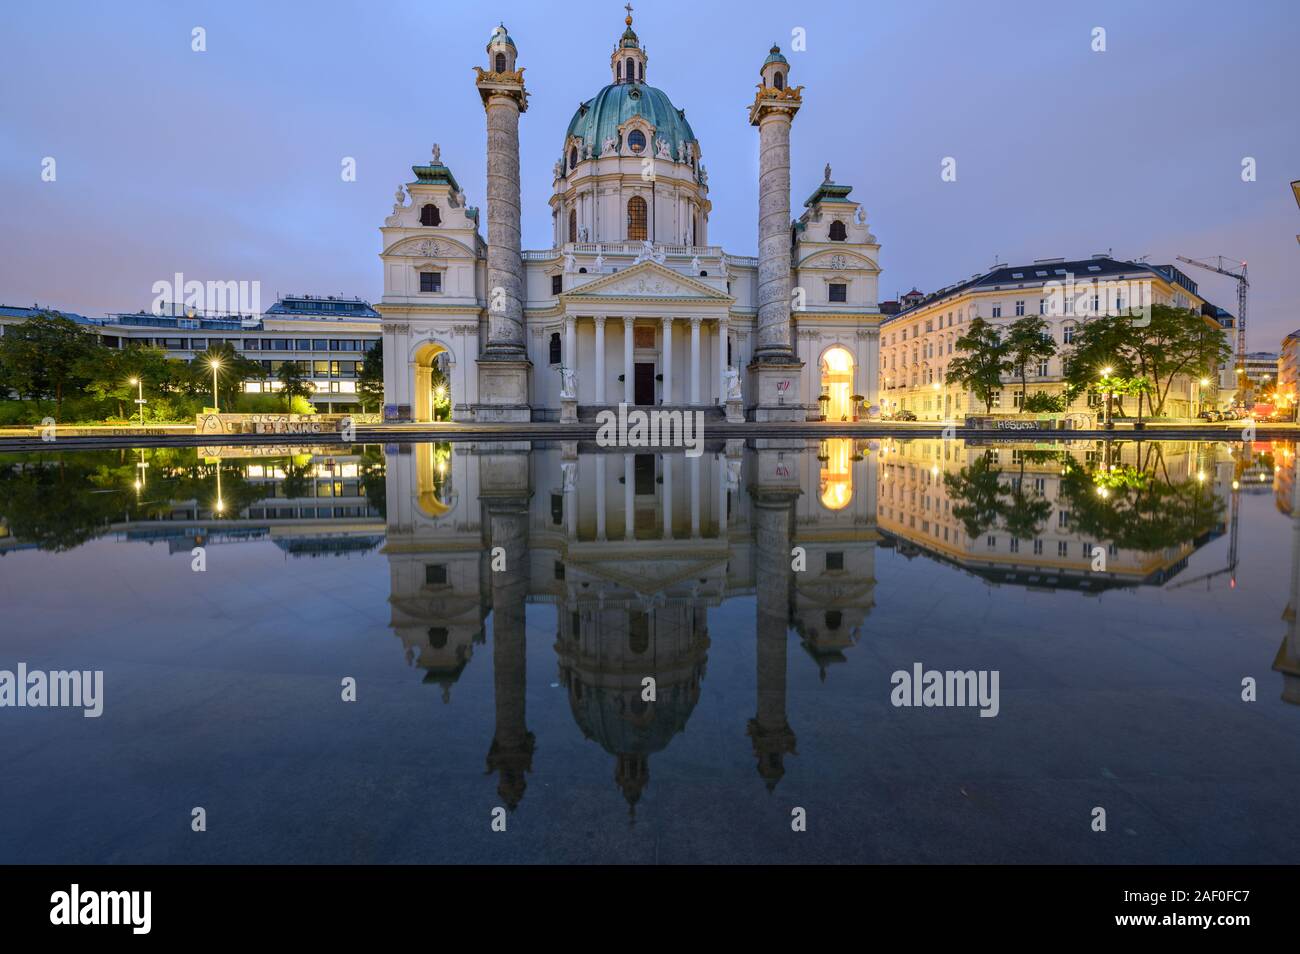 Karlskirche è considerata la chiesa barocca più importante di Vienna, nonché uno dei più grandi edifici della città Foto Stock